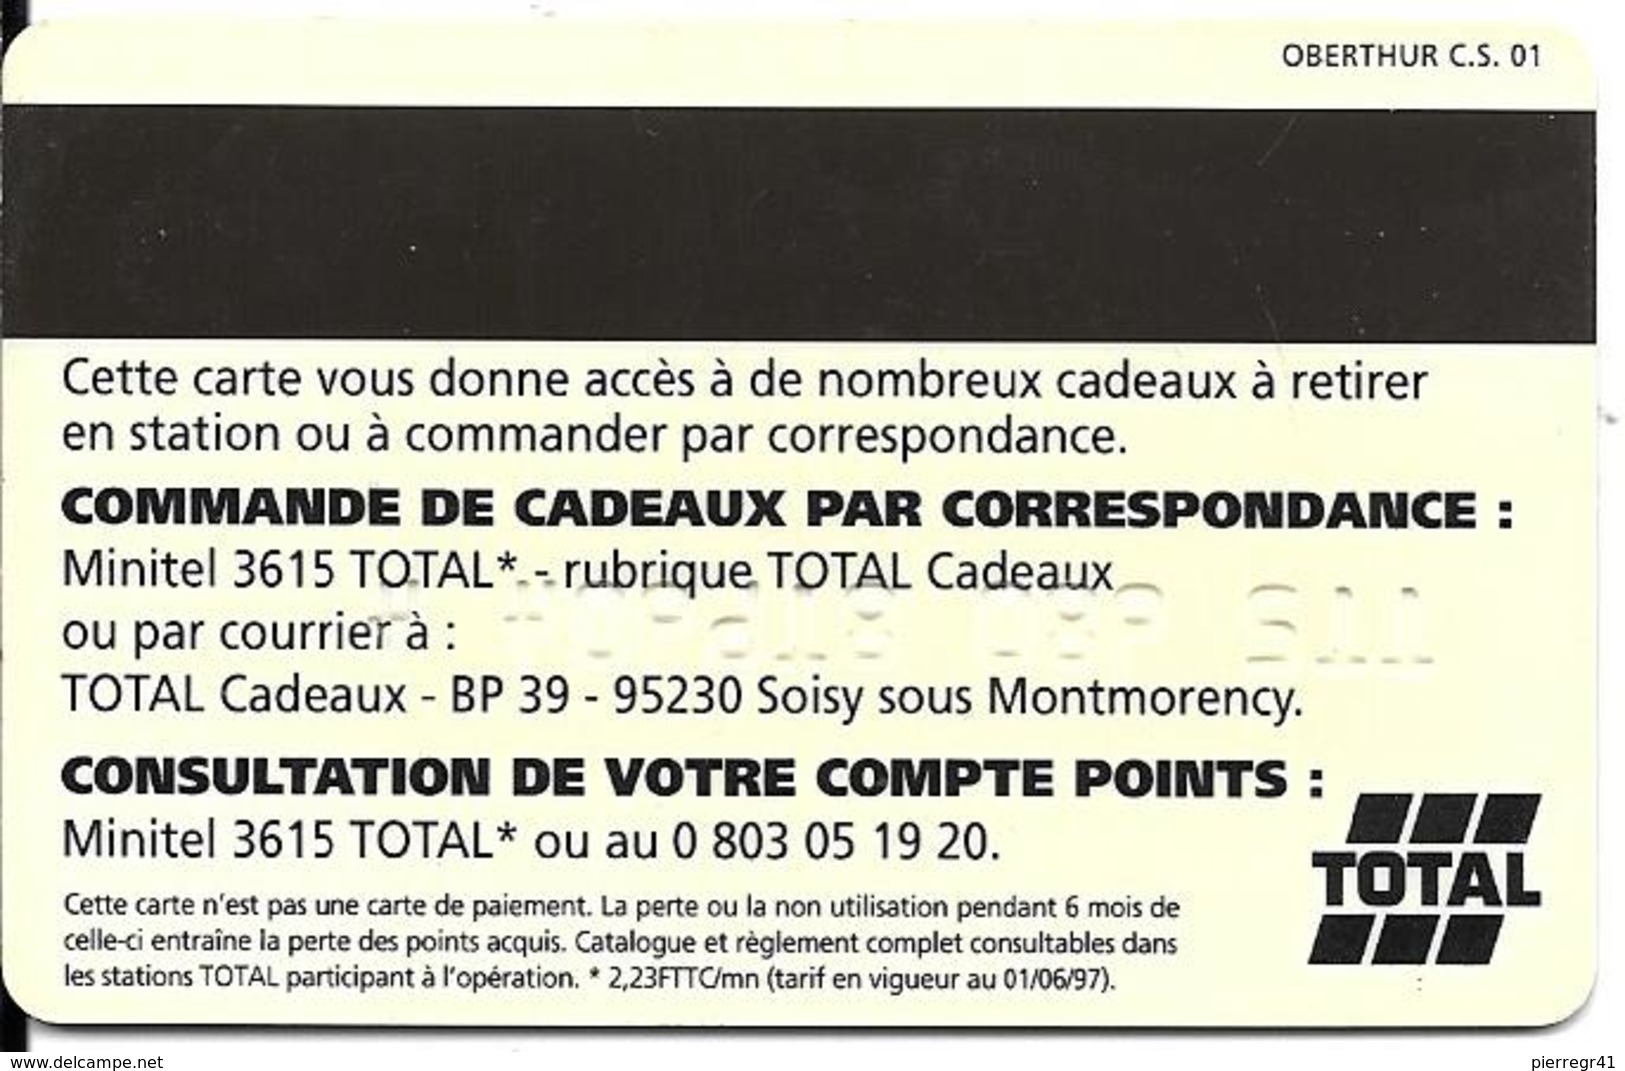 CARTE-MAGNETIQUE-TOTAL-CADEAUX-01/06/97-V° BANDE MAGN-MARRON FONCE-V° Fab OBERTHUR C.S 01-V° N° Tel En 800-TBE- - Car Wash Cards